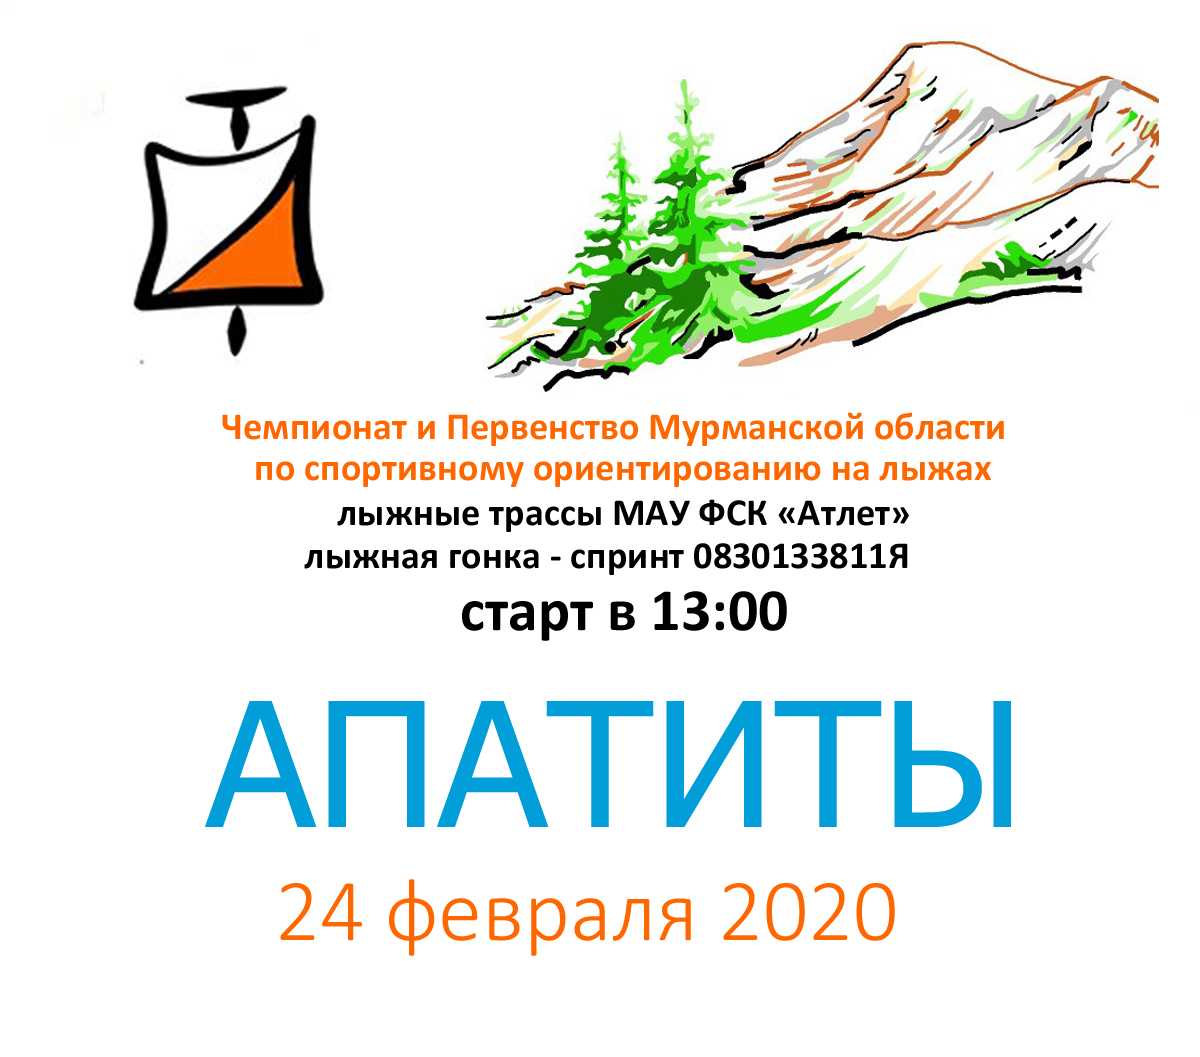 ЧиП Мурманской области по спортивному ориентированию на лыжах 